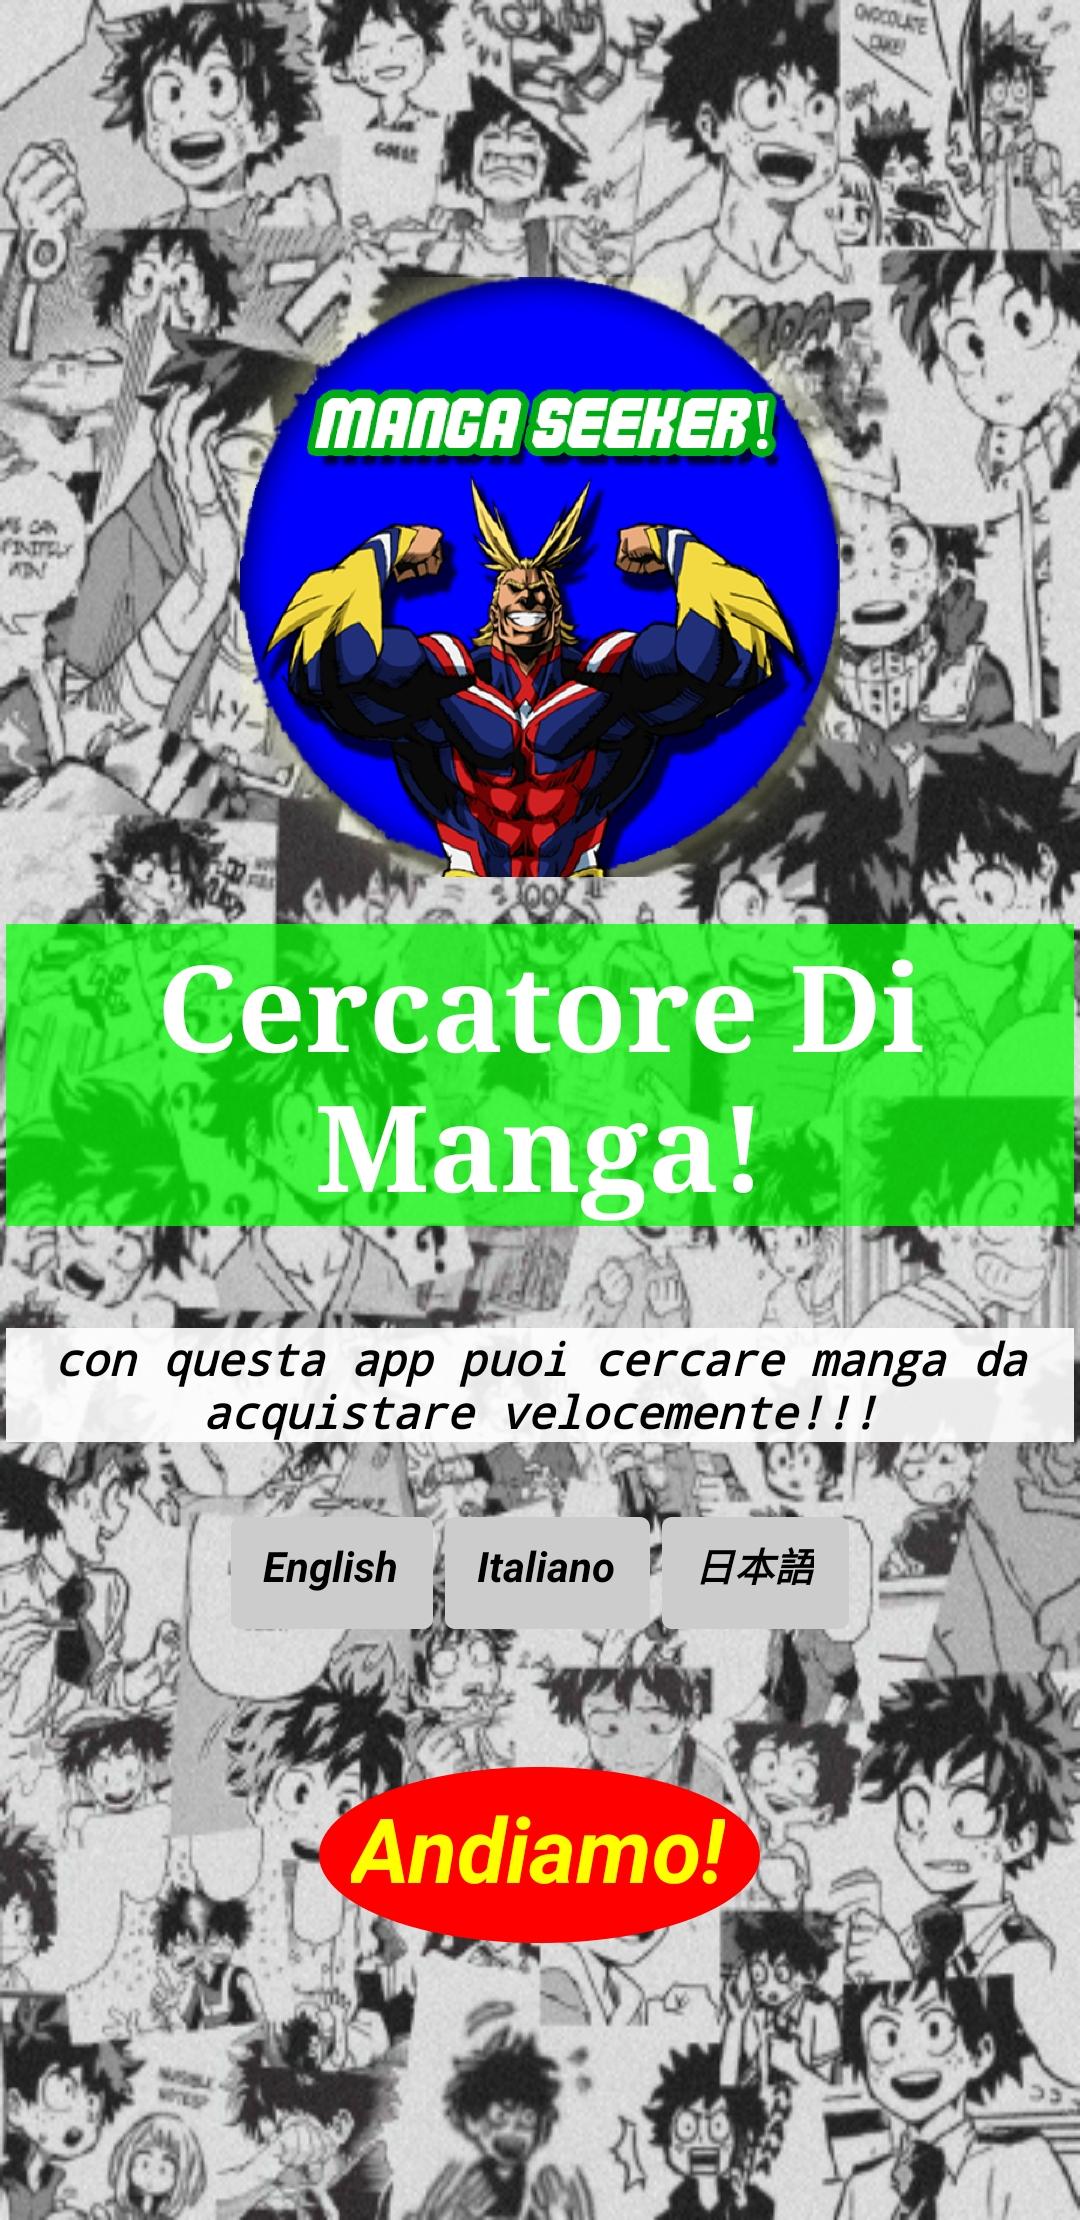 Manga Seeker! 1.1 Screenshot 10